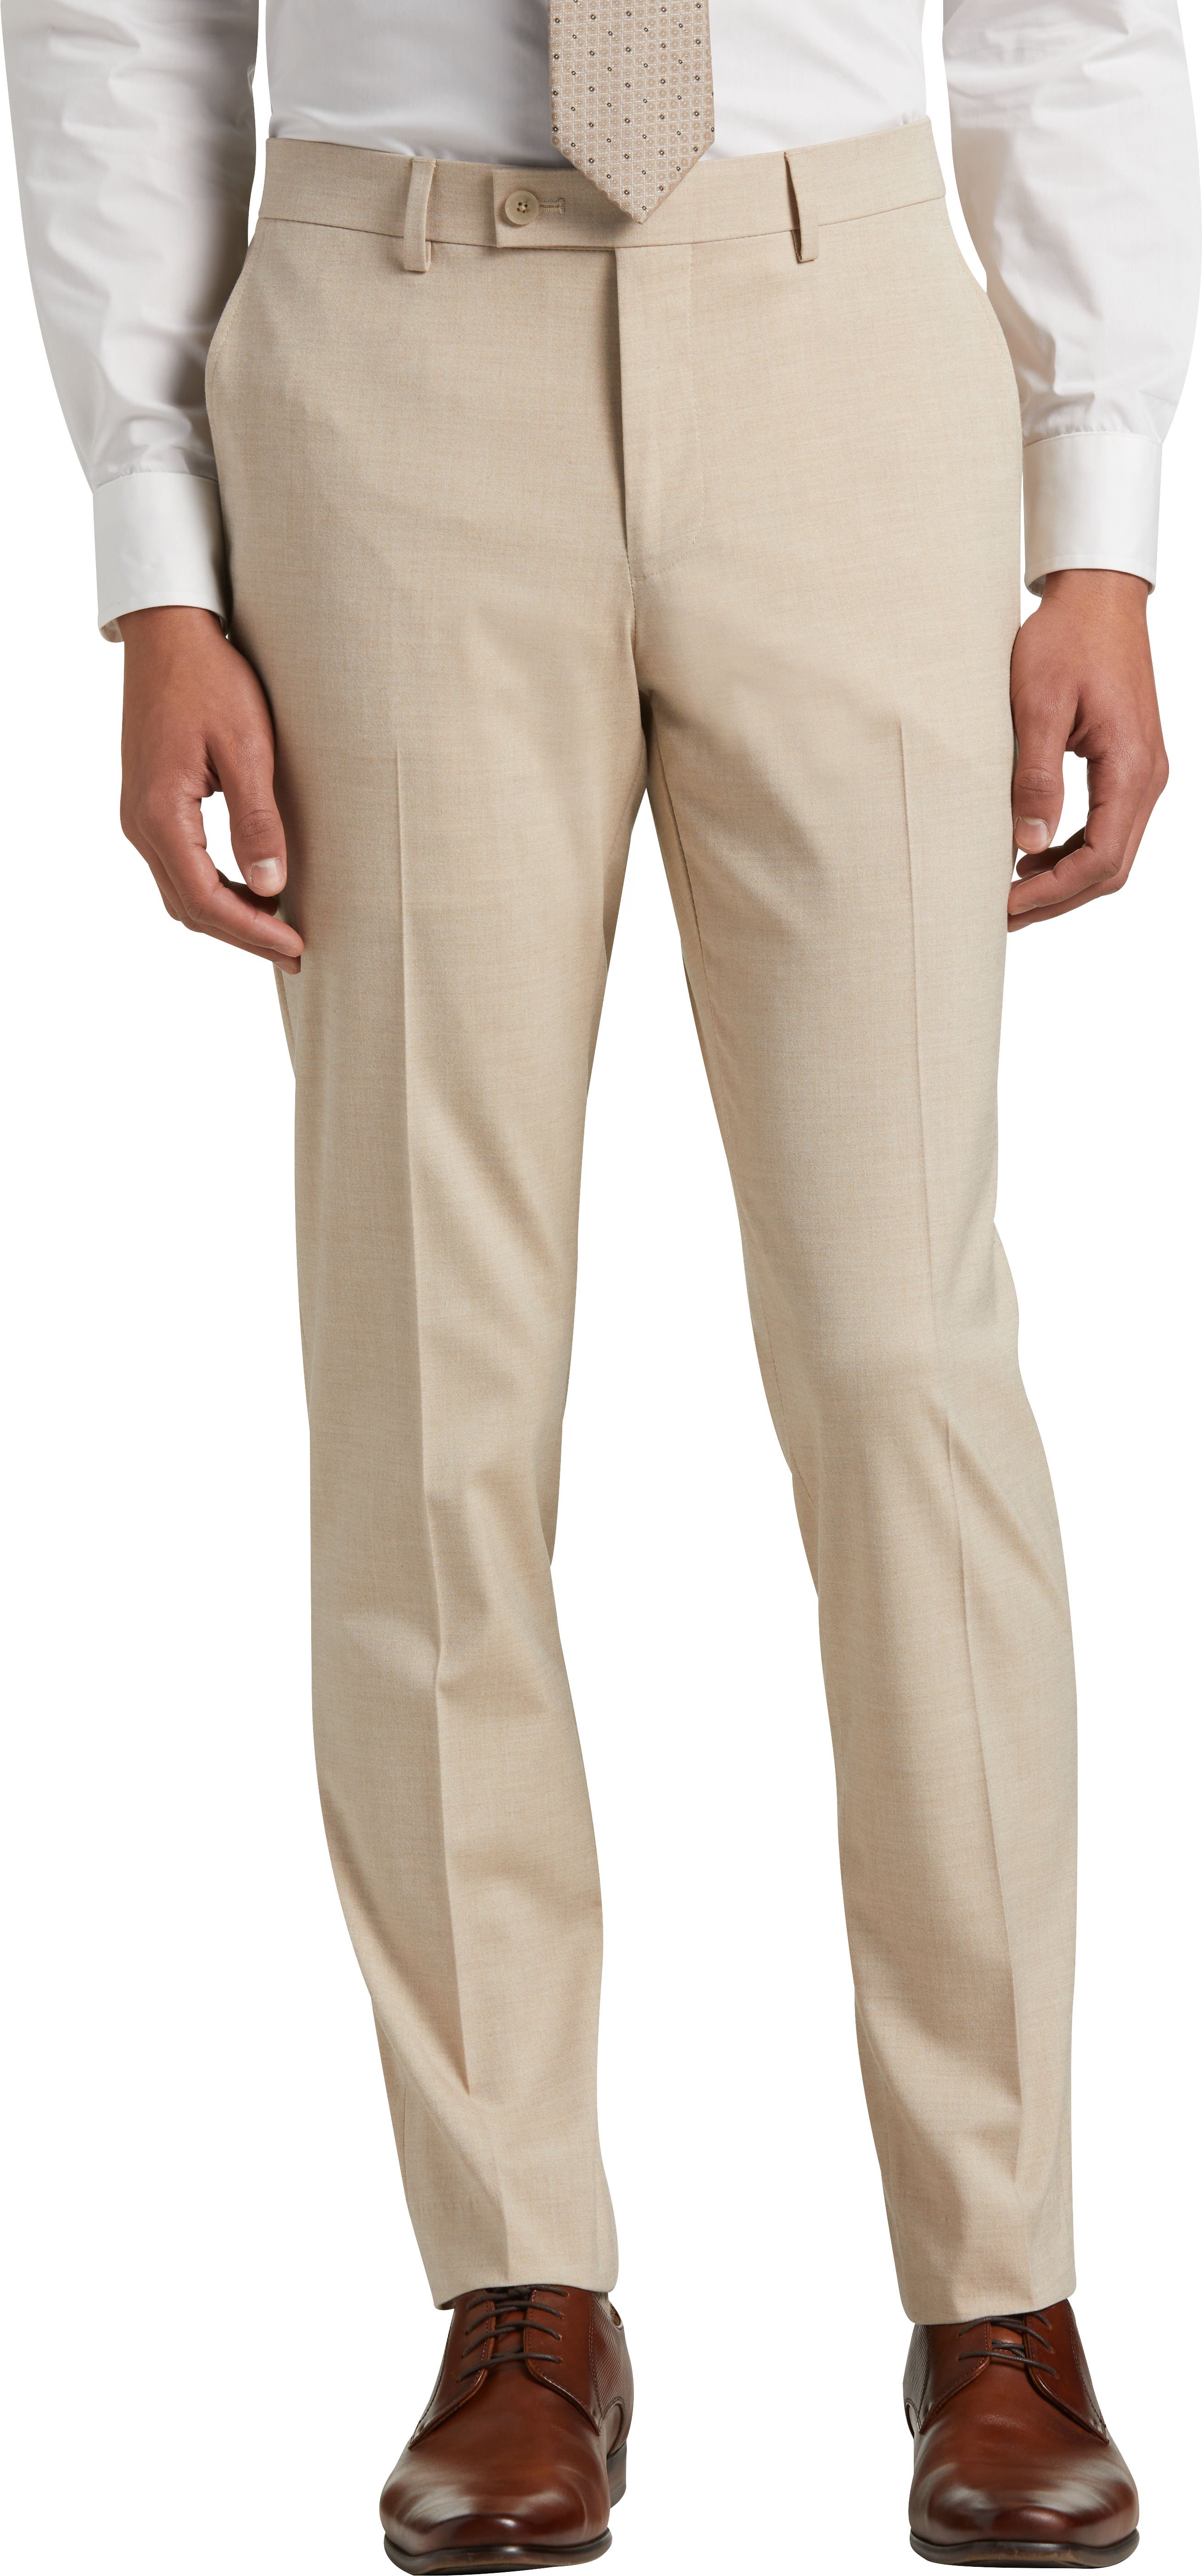 Egara Skinny Fit Suit Separates Pants, Tan - Men's Sale | Men's Wearhouse